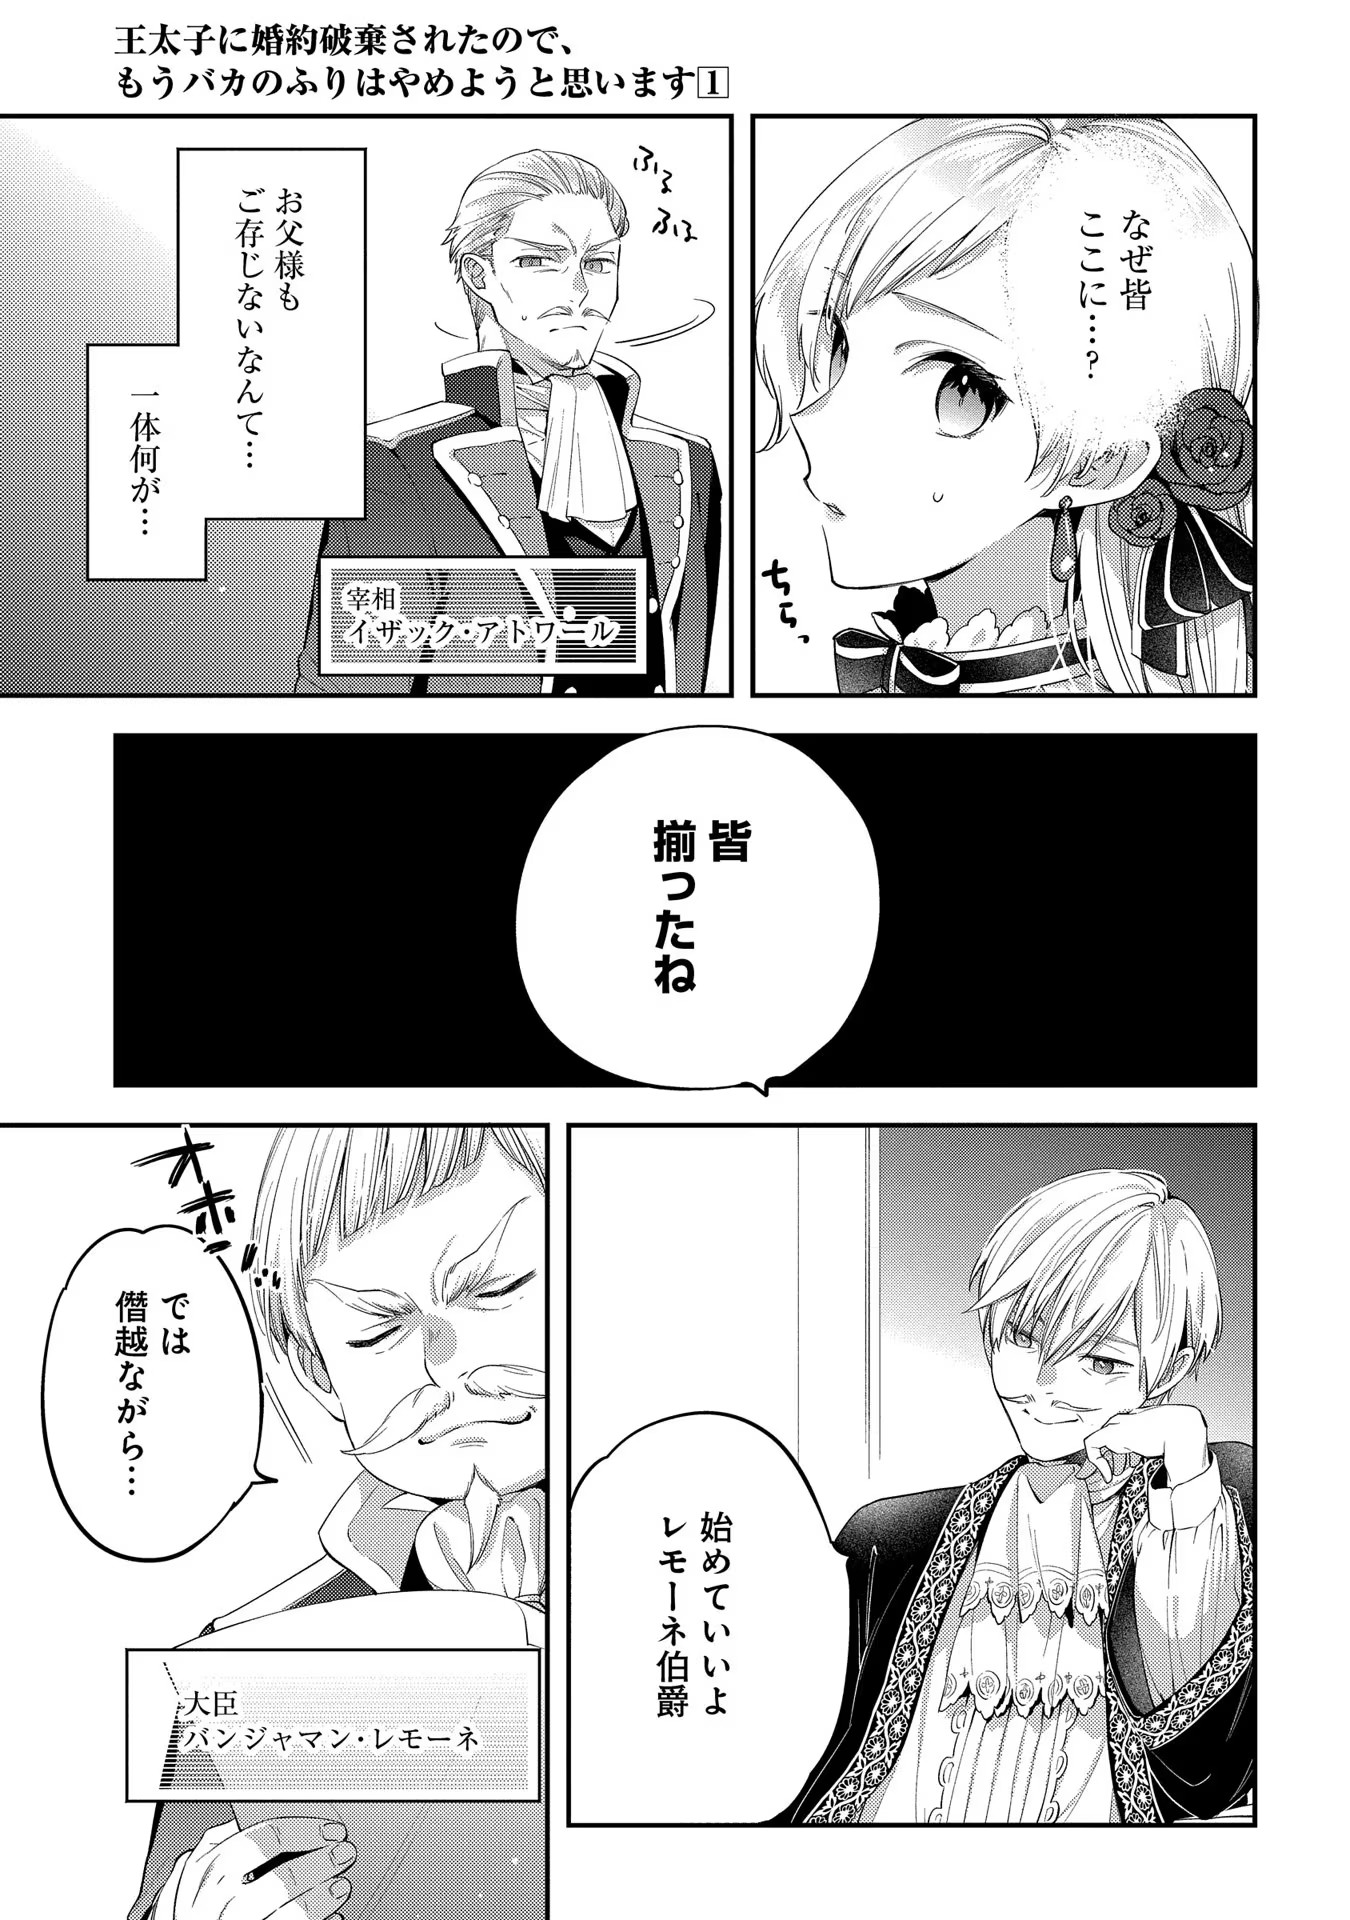 Outaishi ni Konyaku Hakisareta no de, Mou Baka no Furi wa Yameyou to Omoimasu - Chapter 1 - Page 11